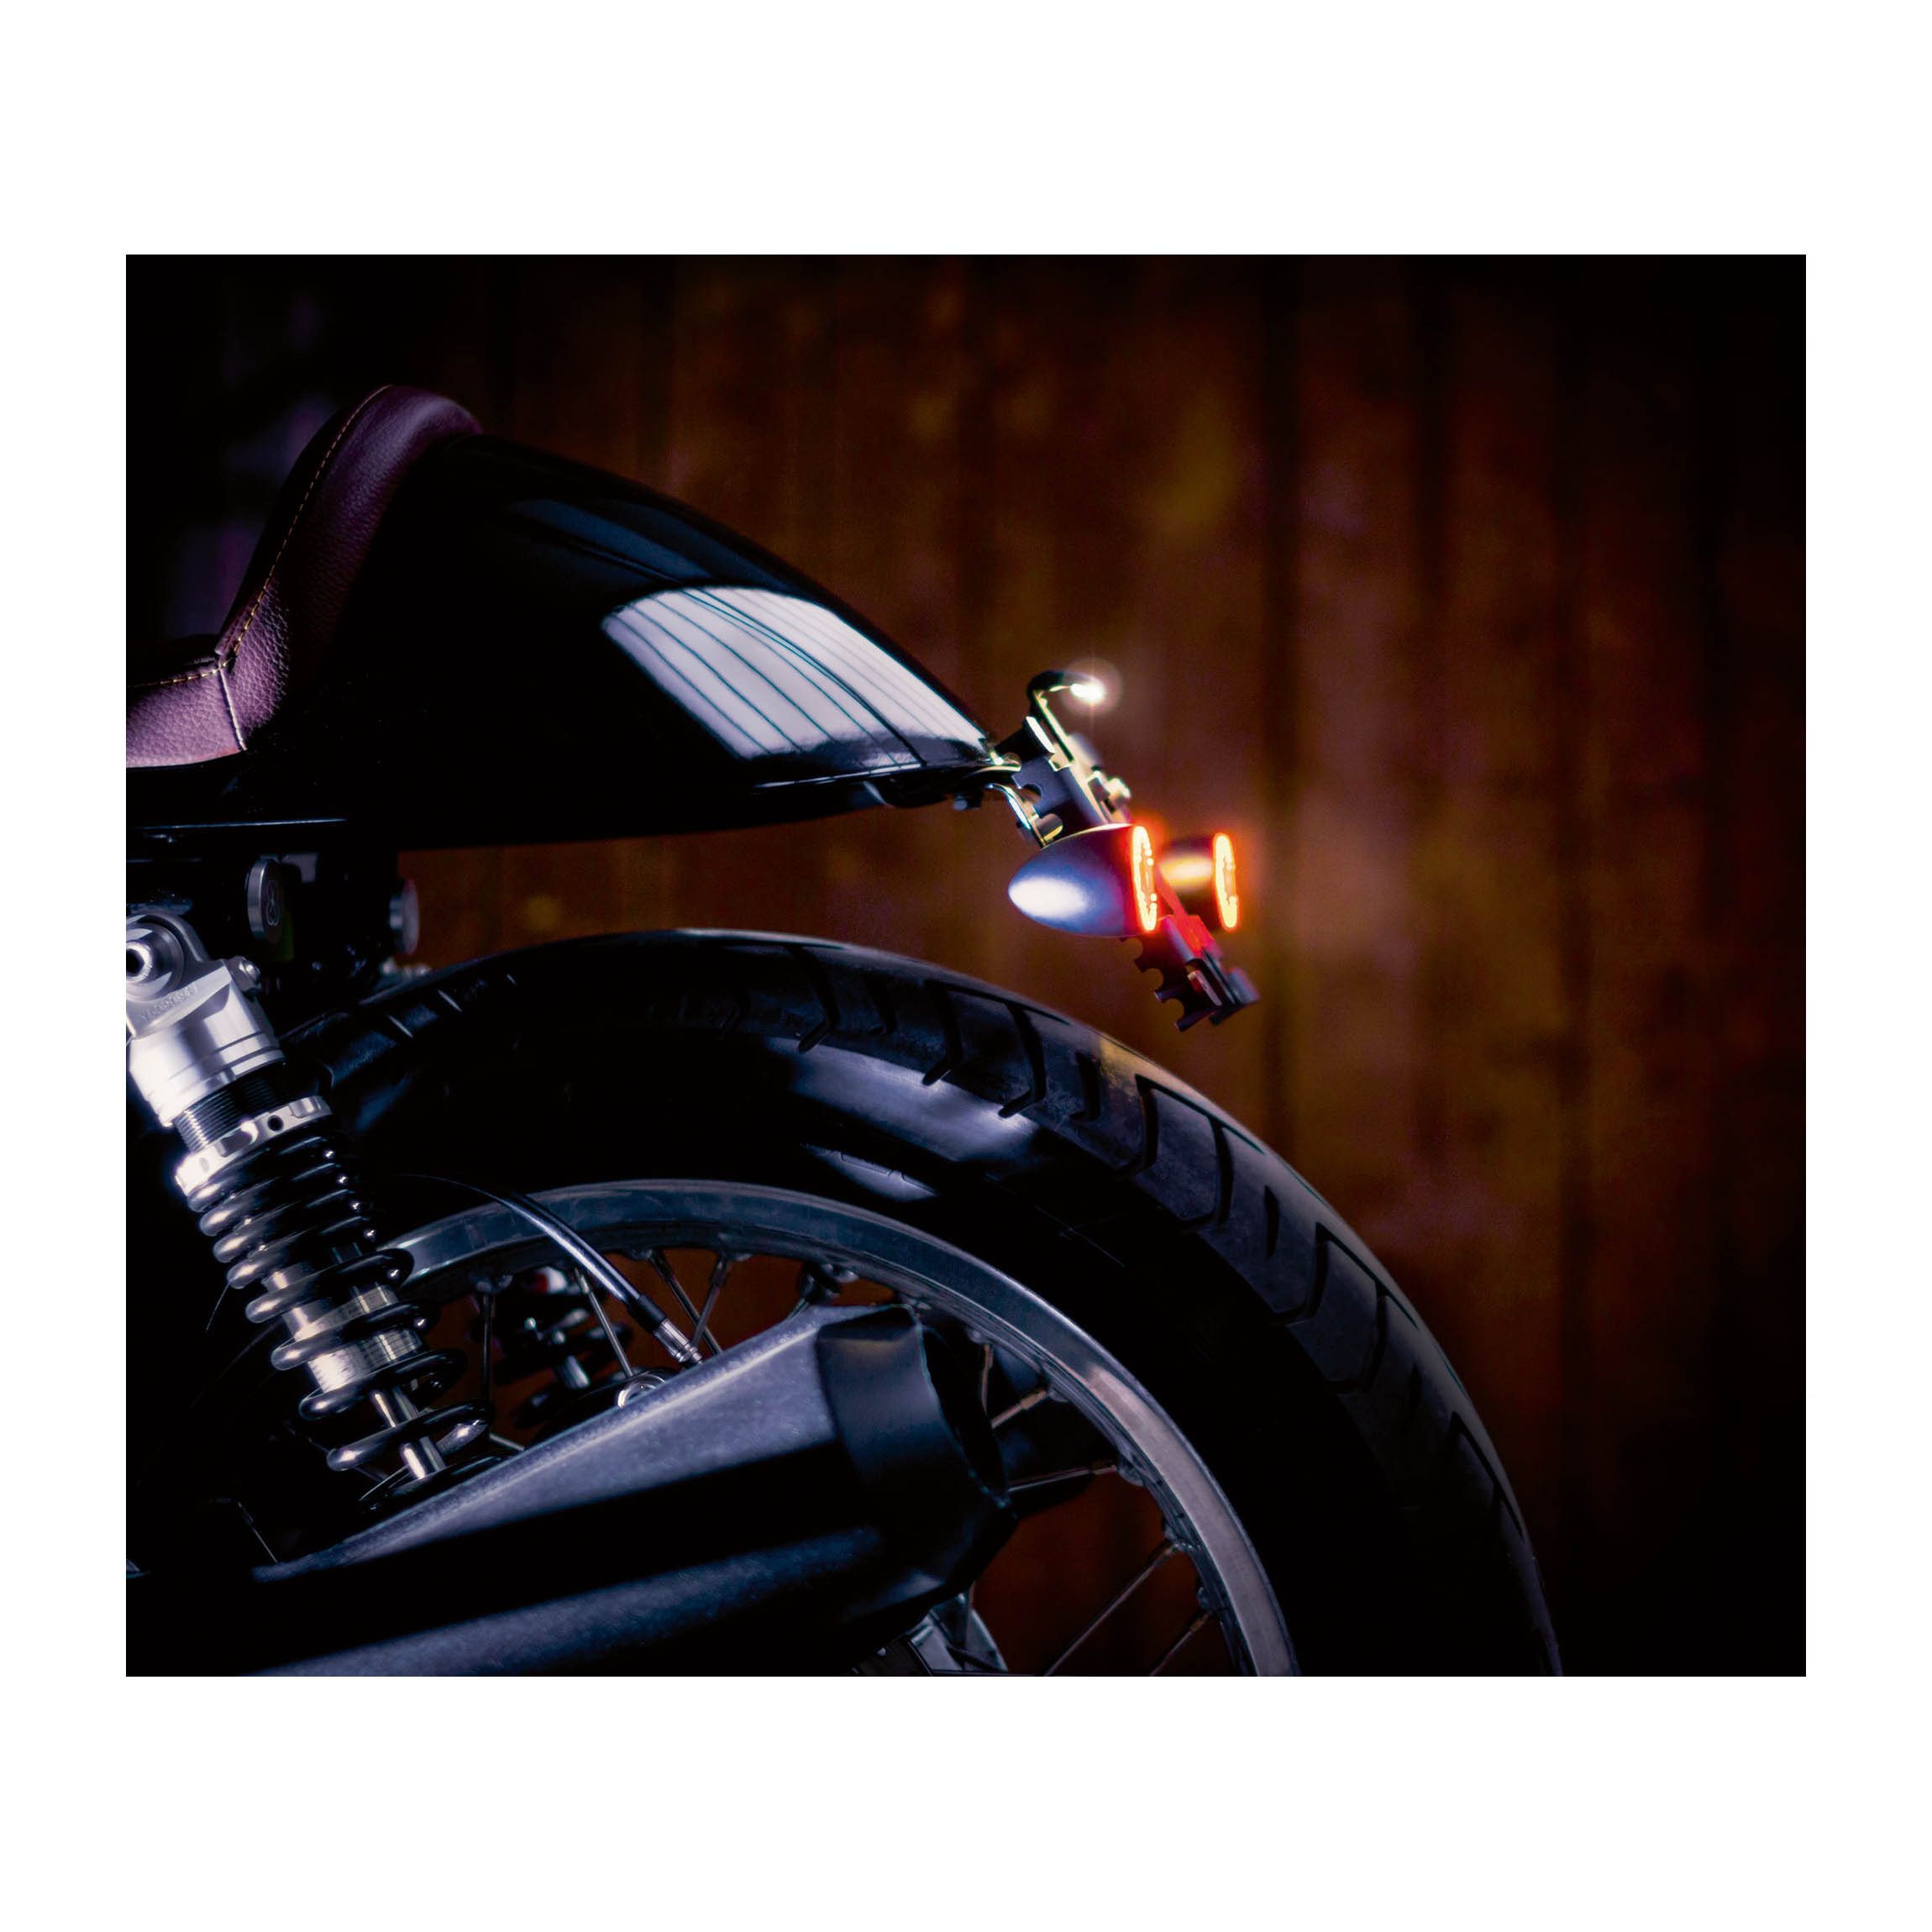 Reflektor beim Motorrad - Pflicht richtig einhalten